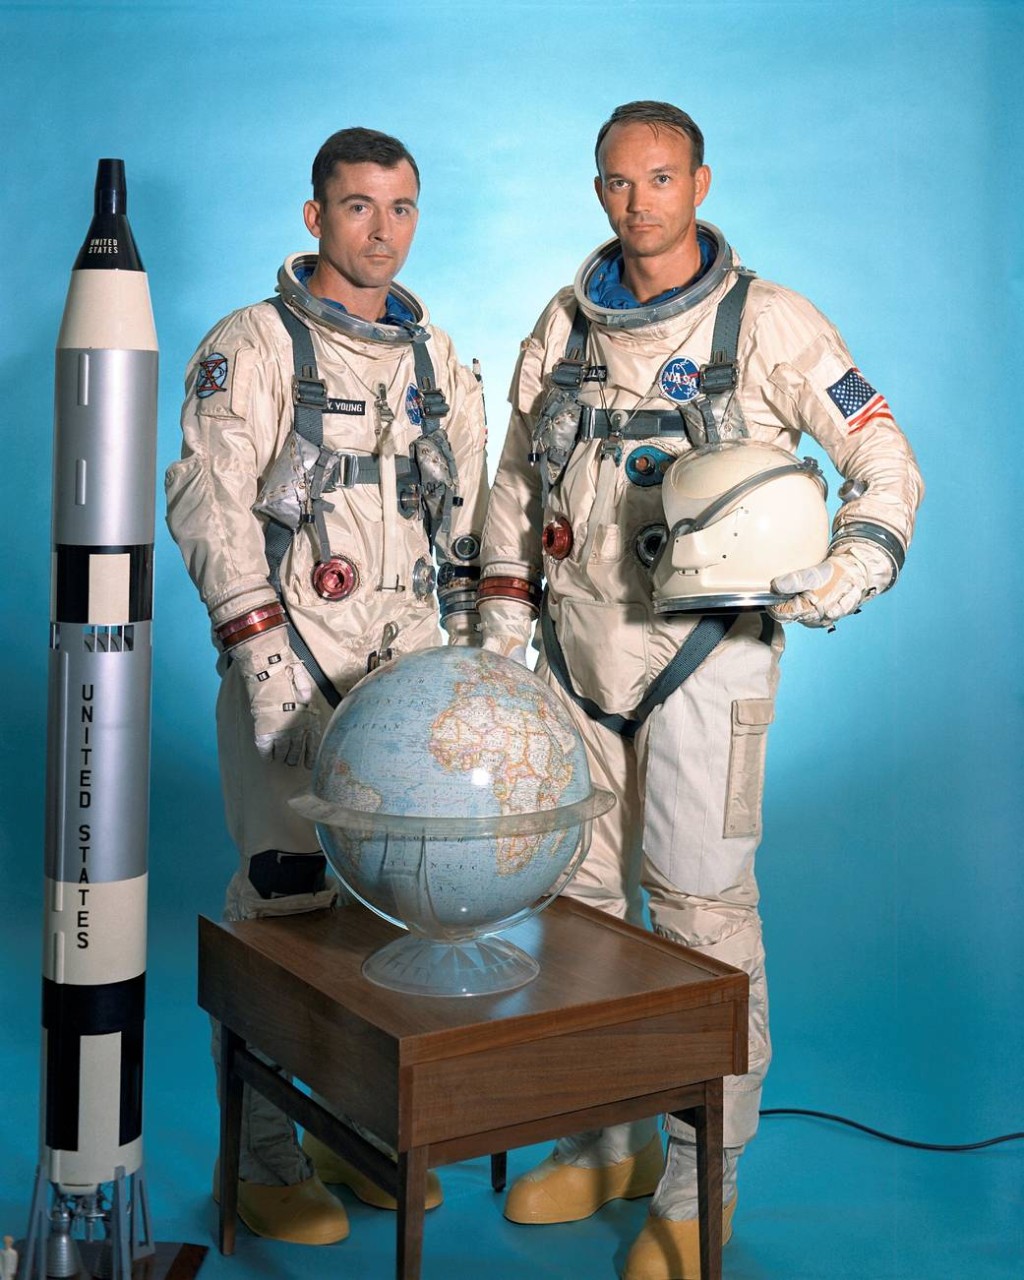 The Gemini 10 Prime Crew